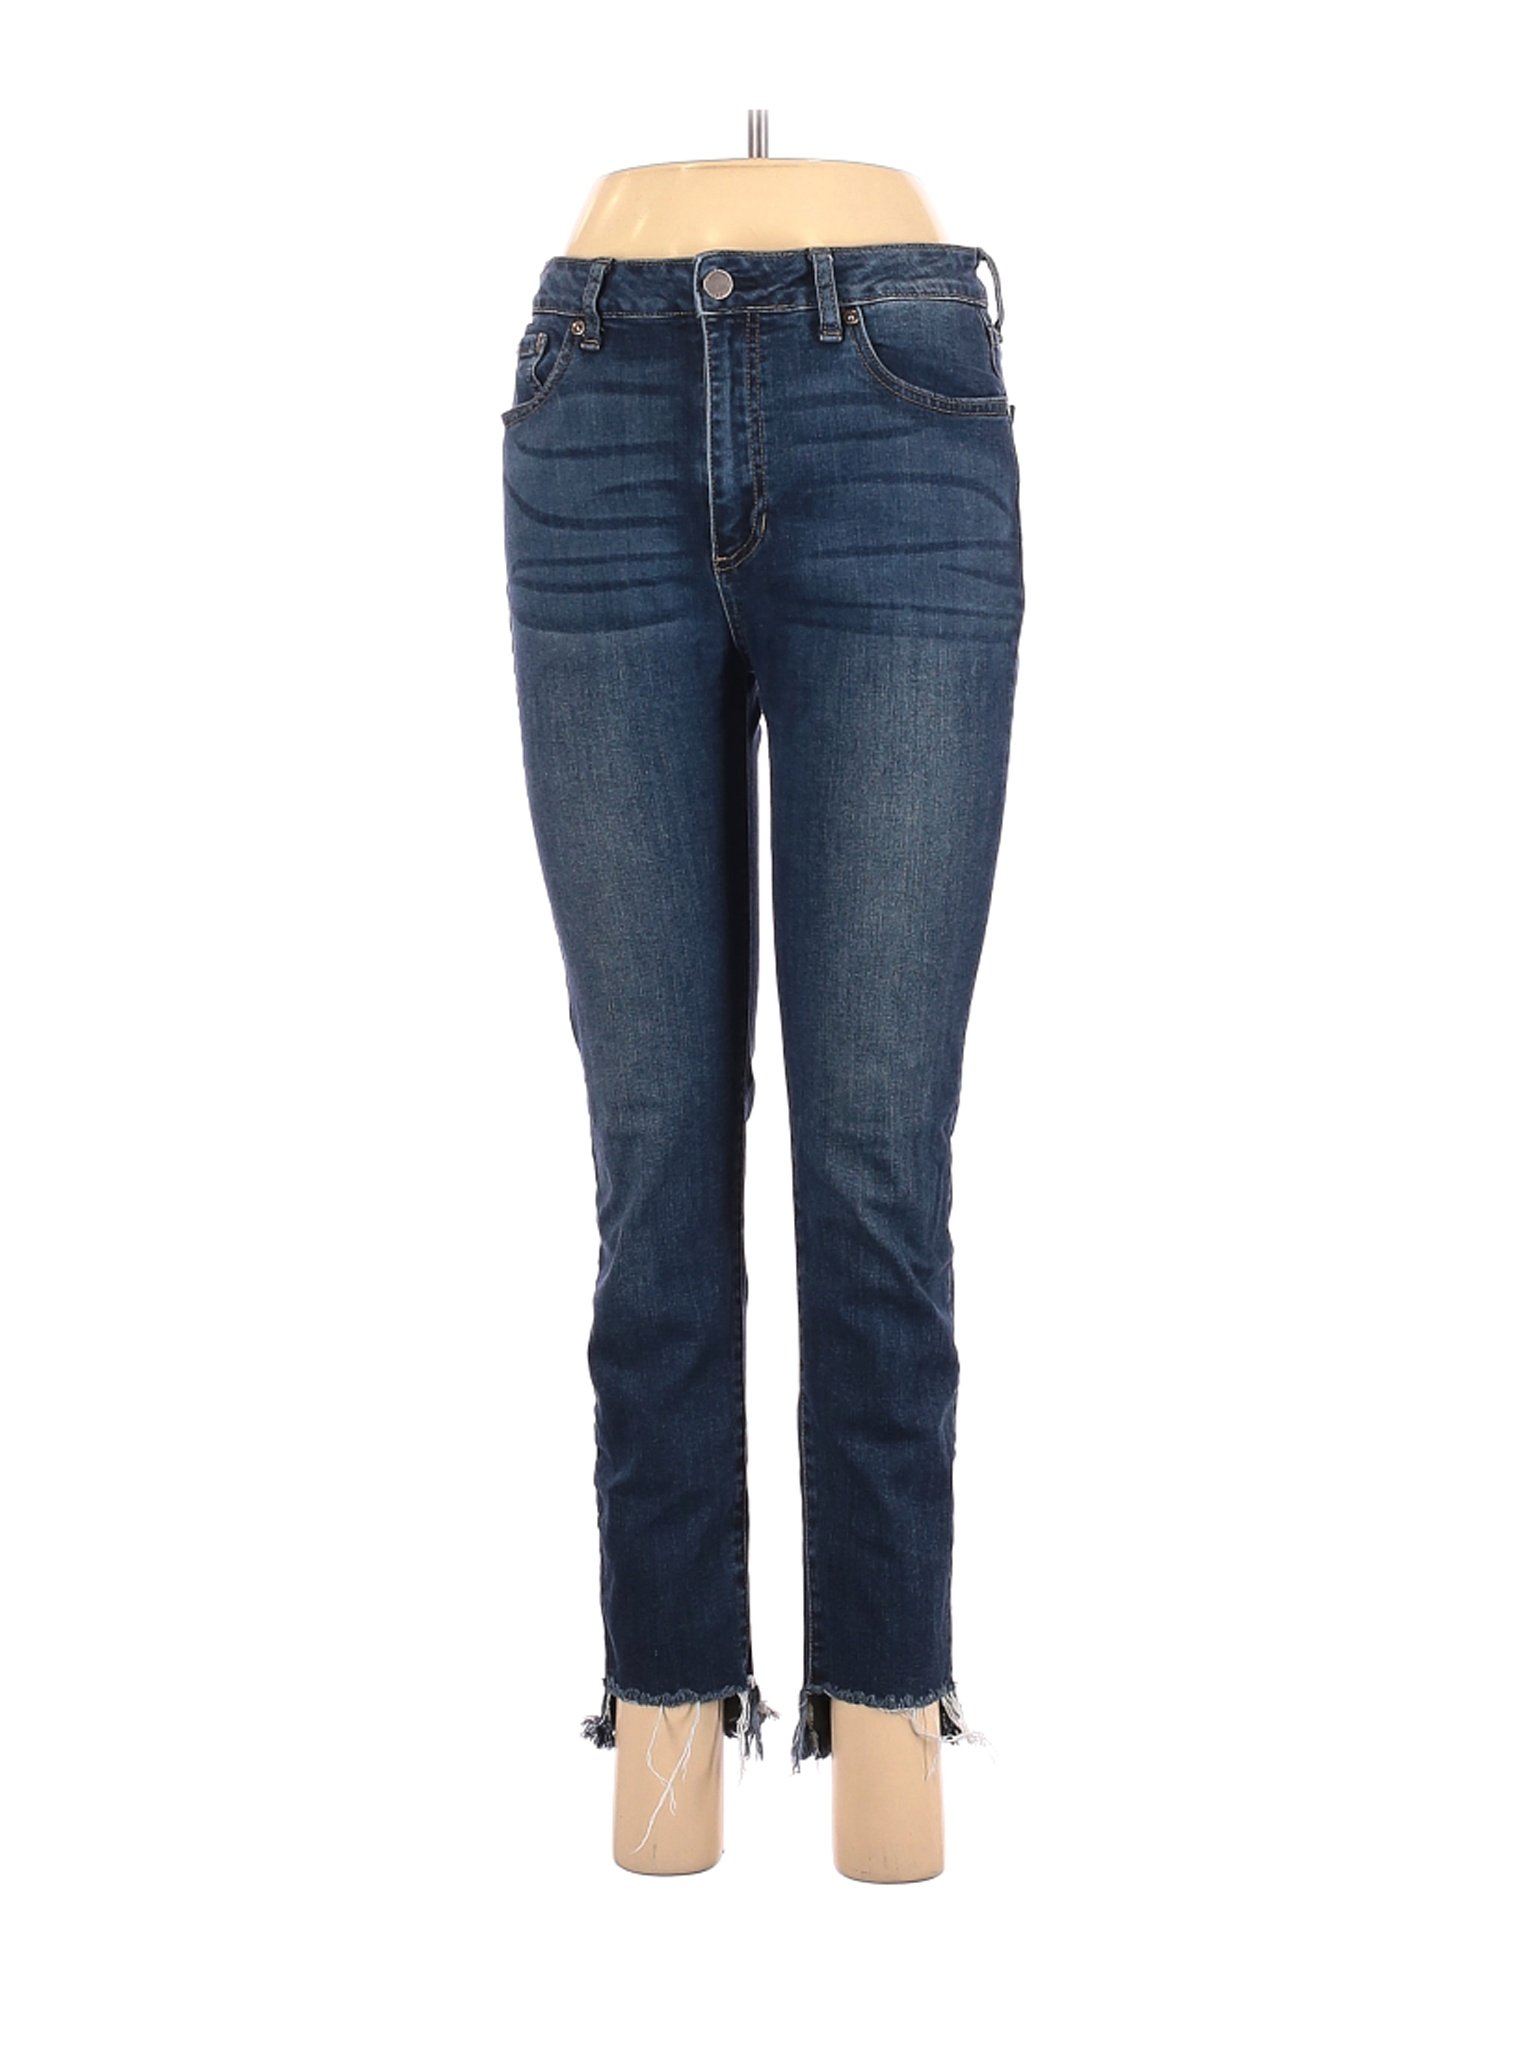 JBD Women Blue Jeans 29W | eBay